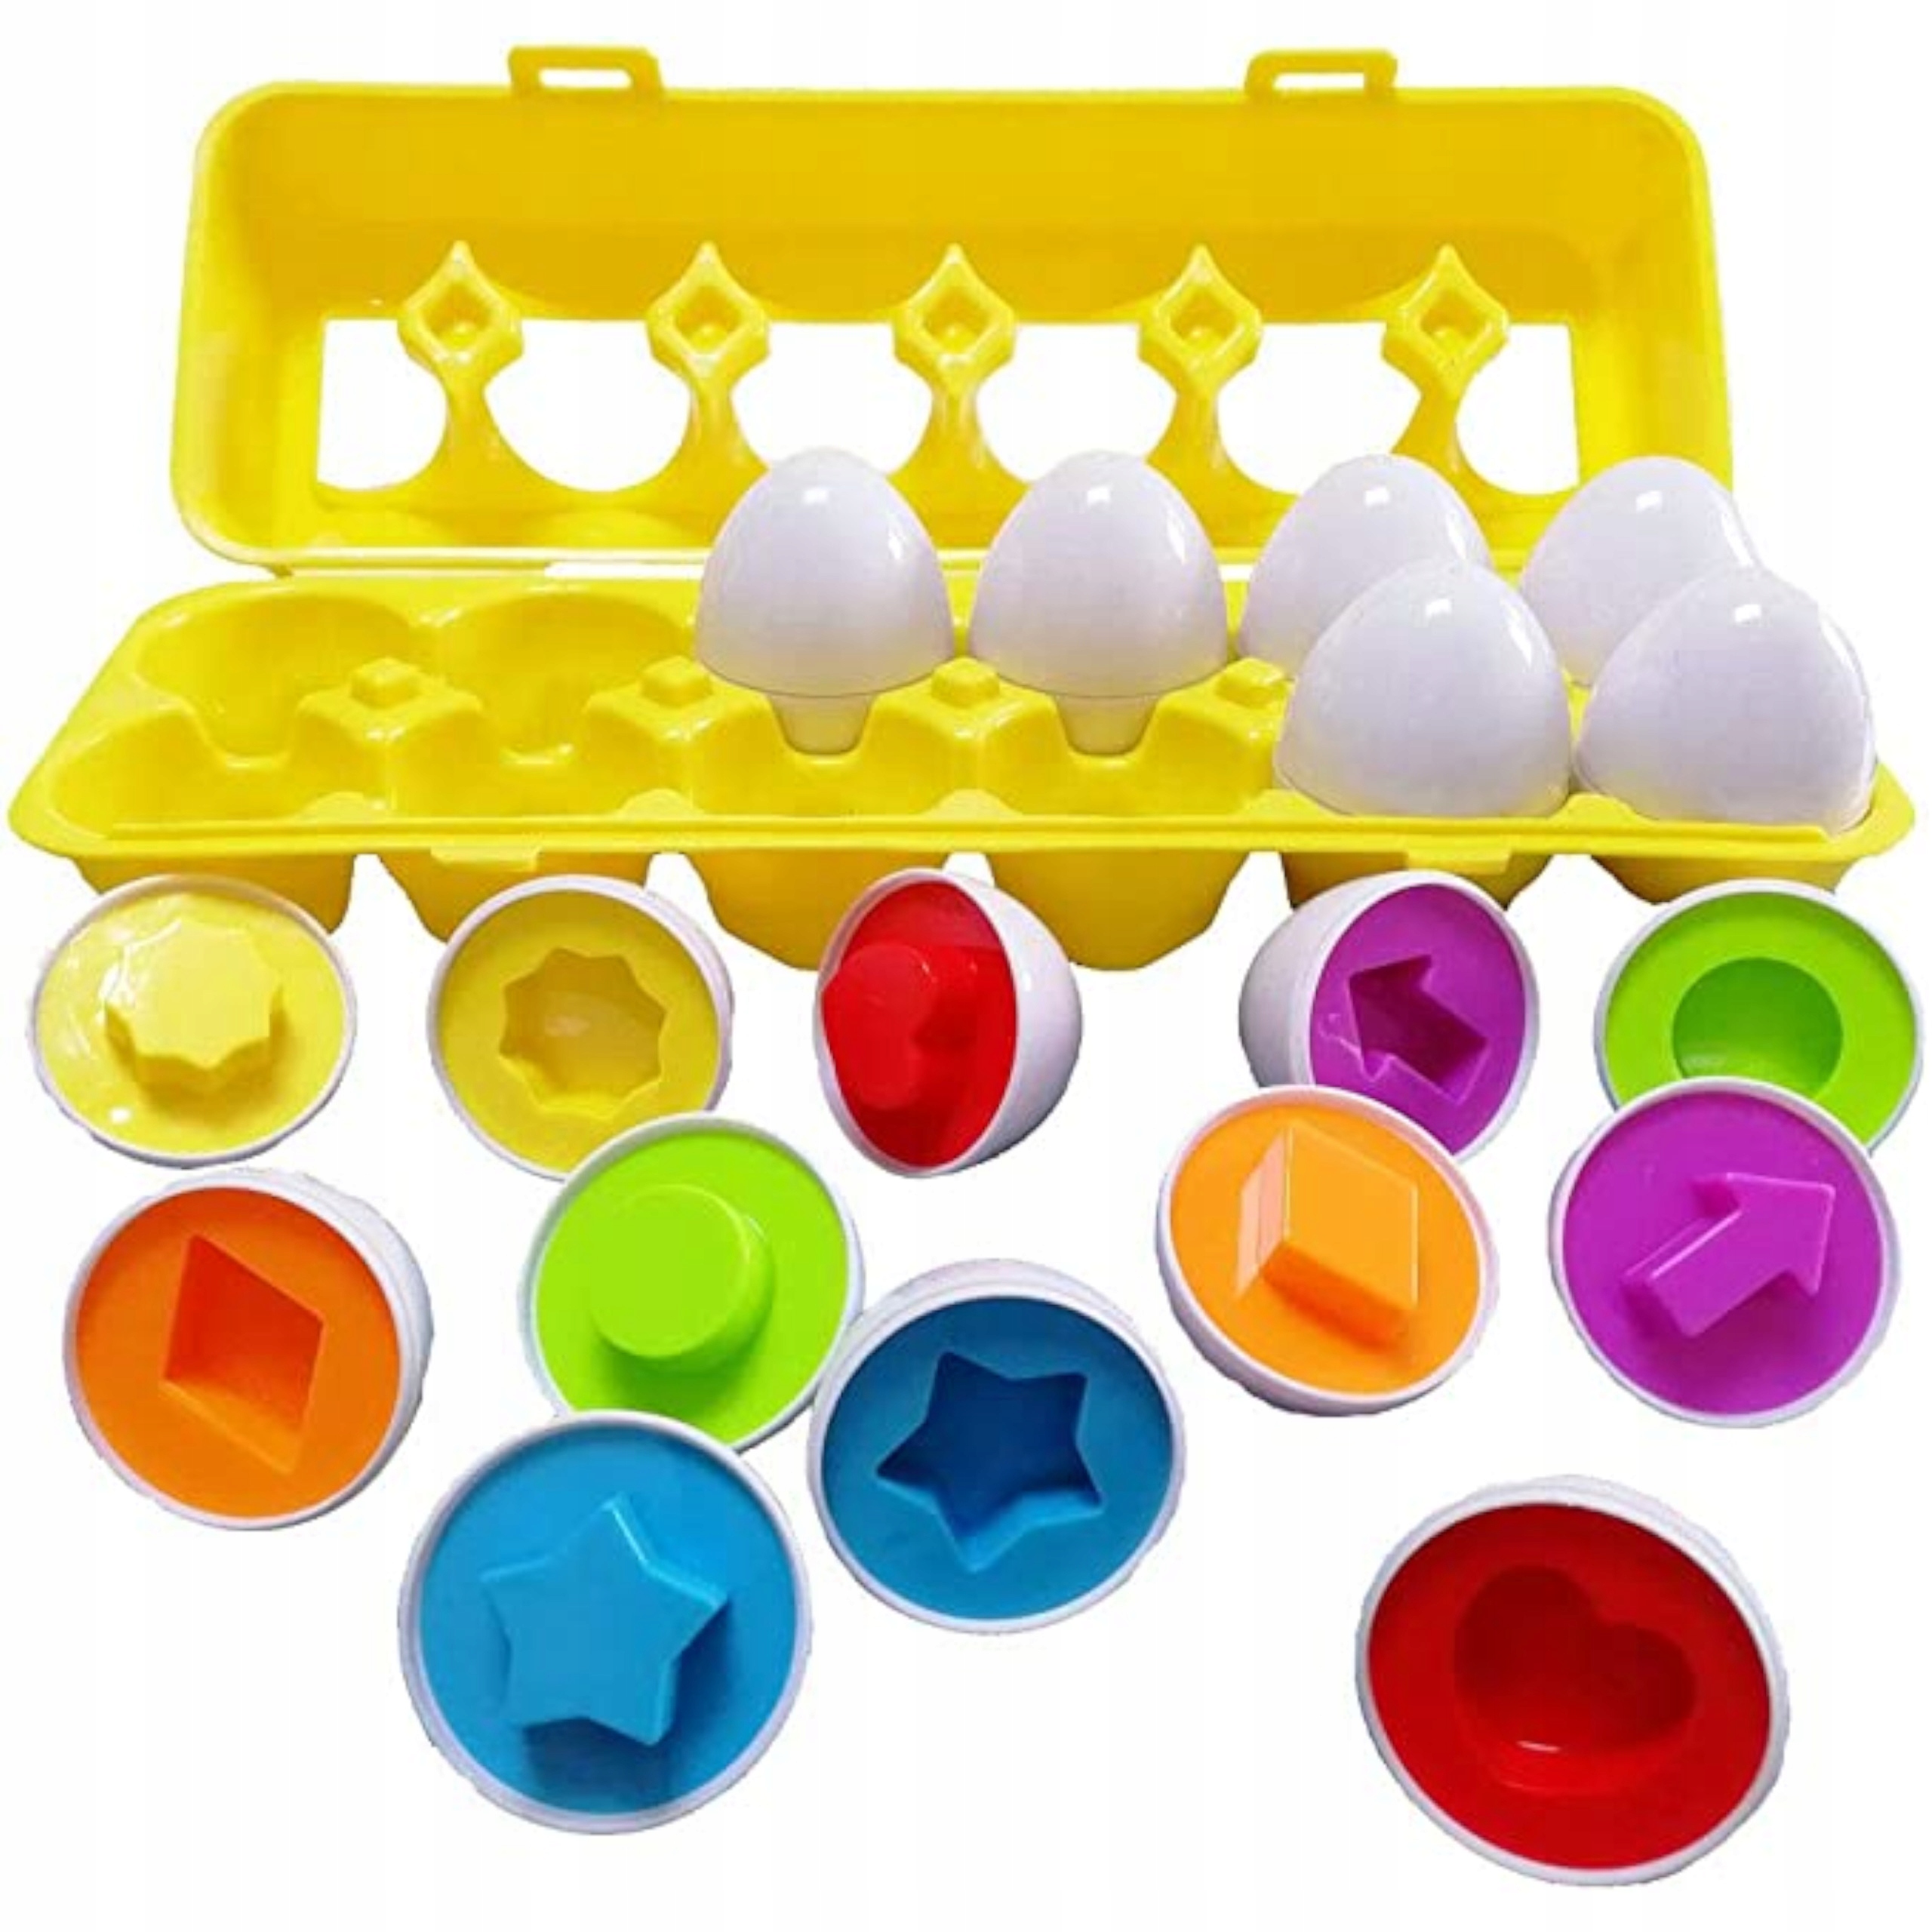 Układanka sorter jajka Montessori kształty LB33-3 Płeć Chłopcy Dziewczynki